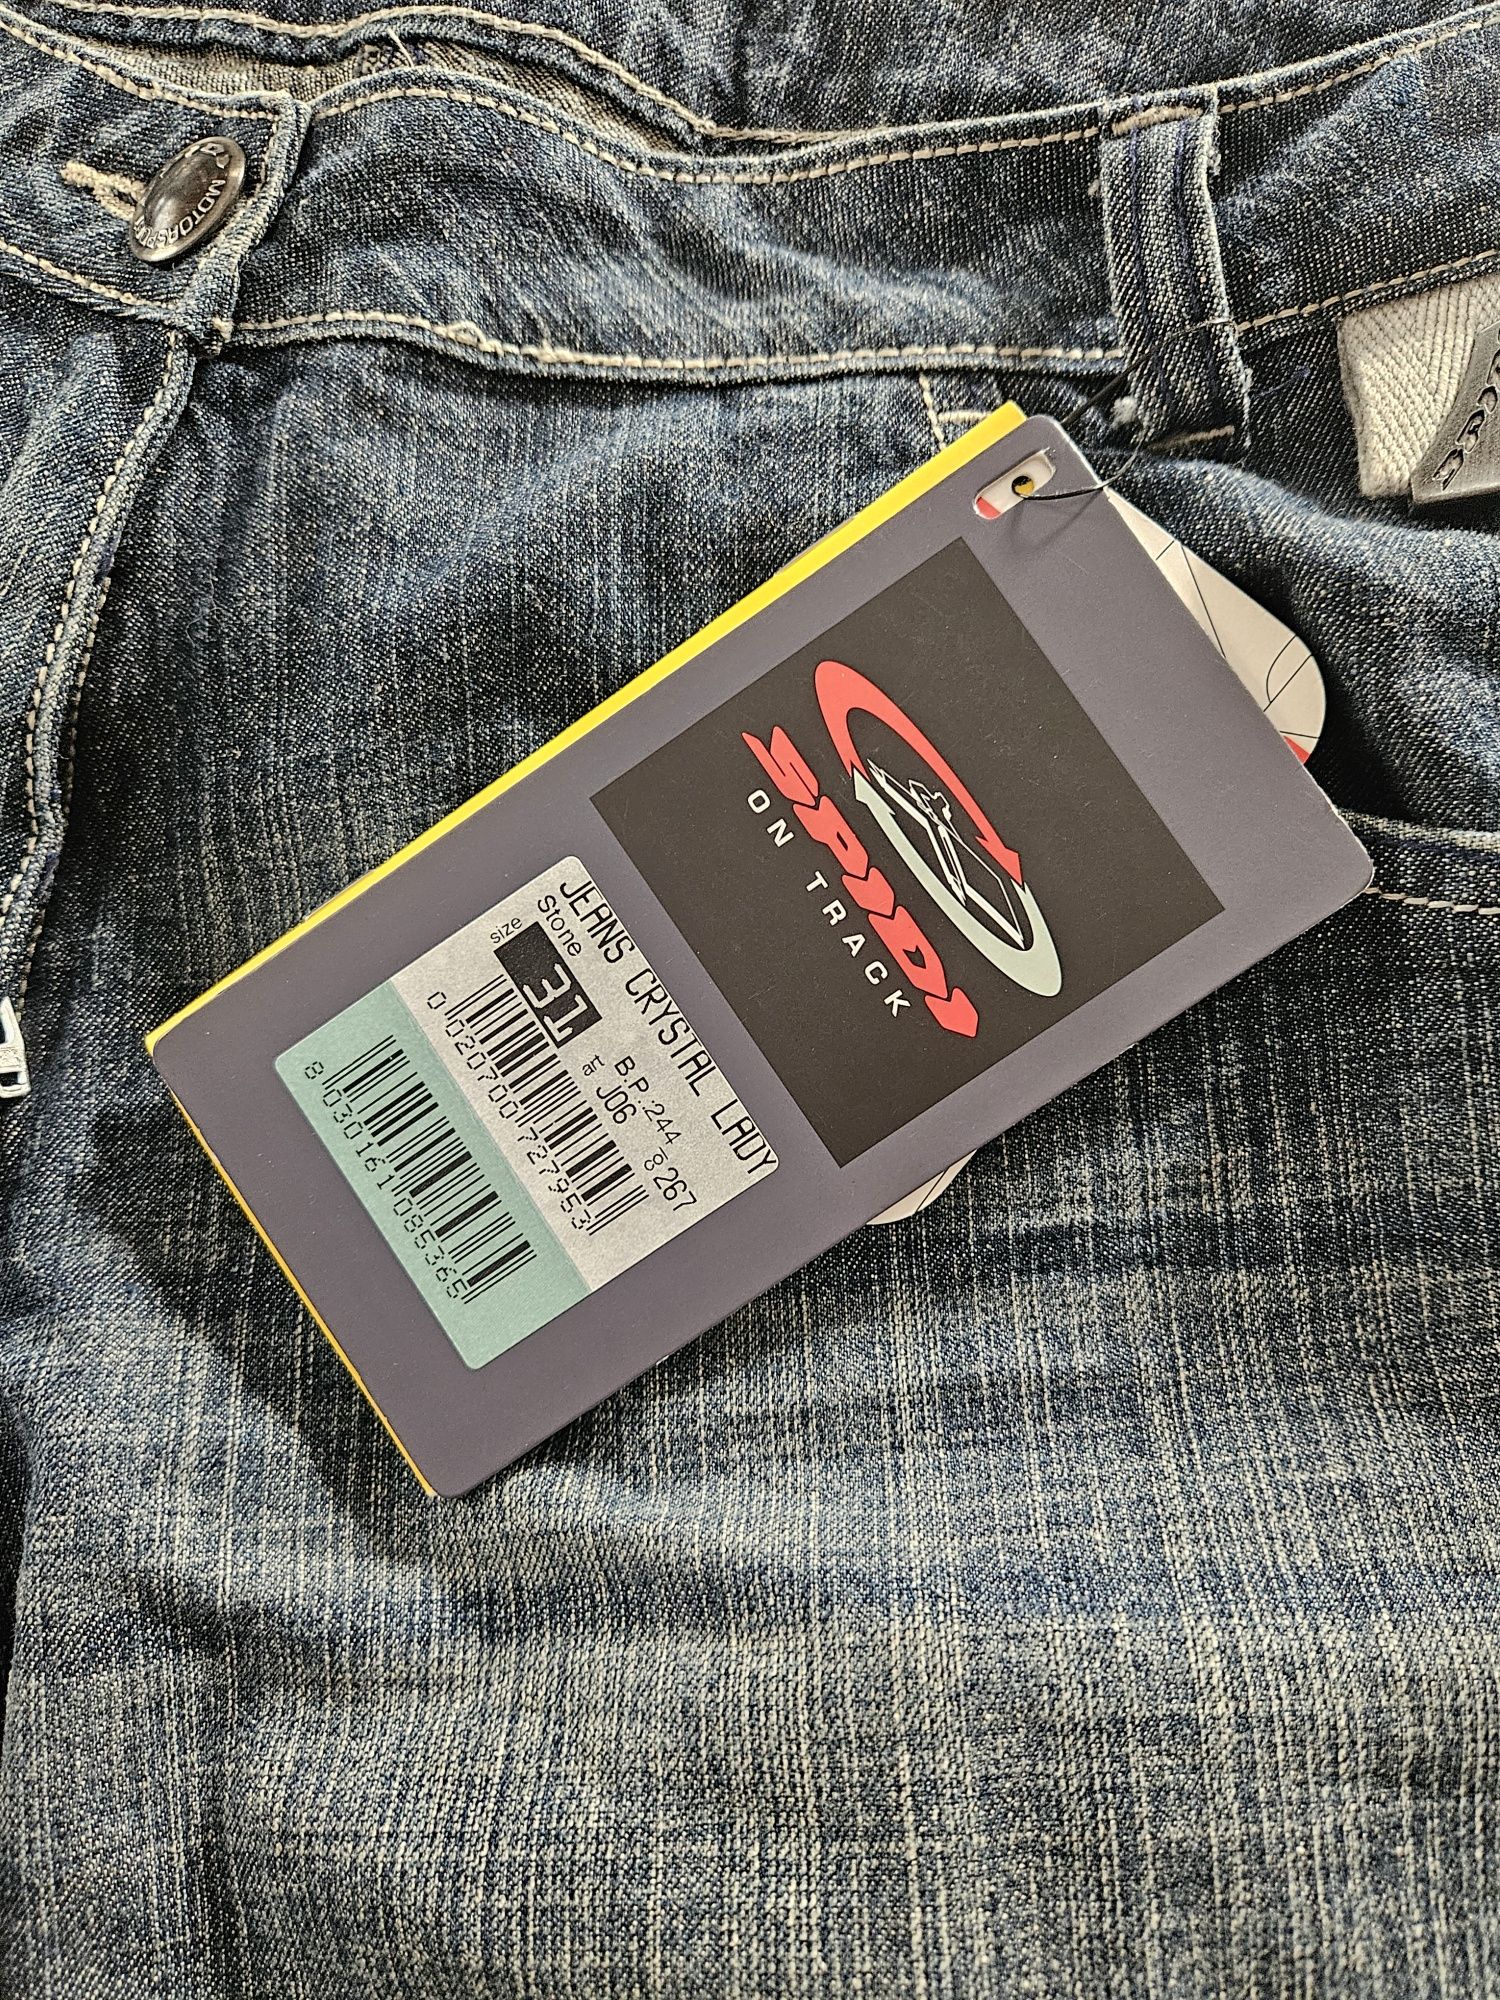 Spodnie motocyklowe spidi crystal damskie 31 jeansowe jeans wzmocnione